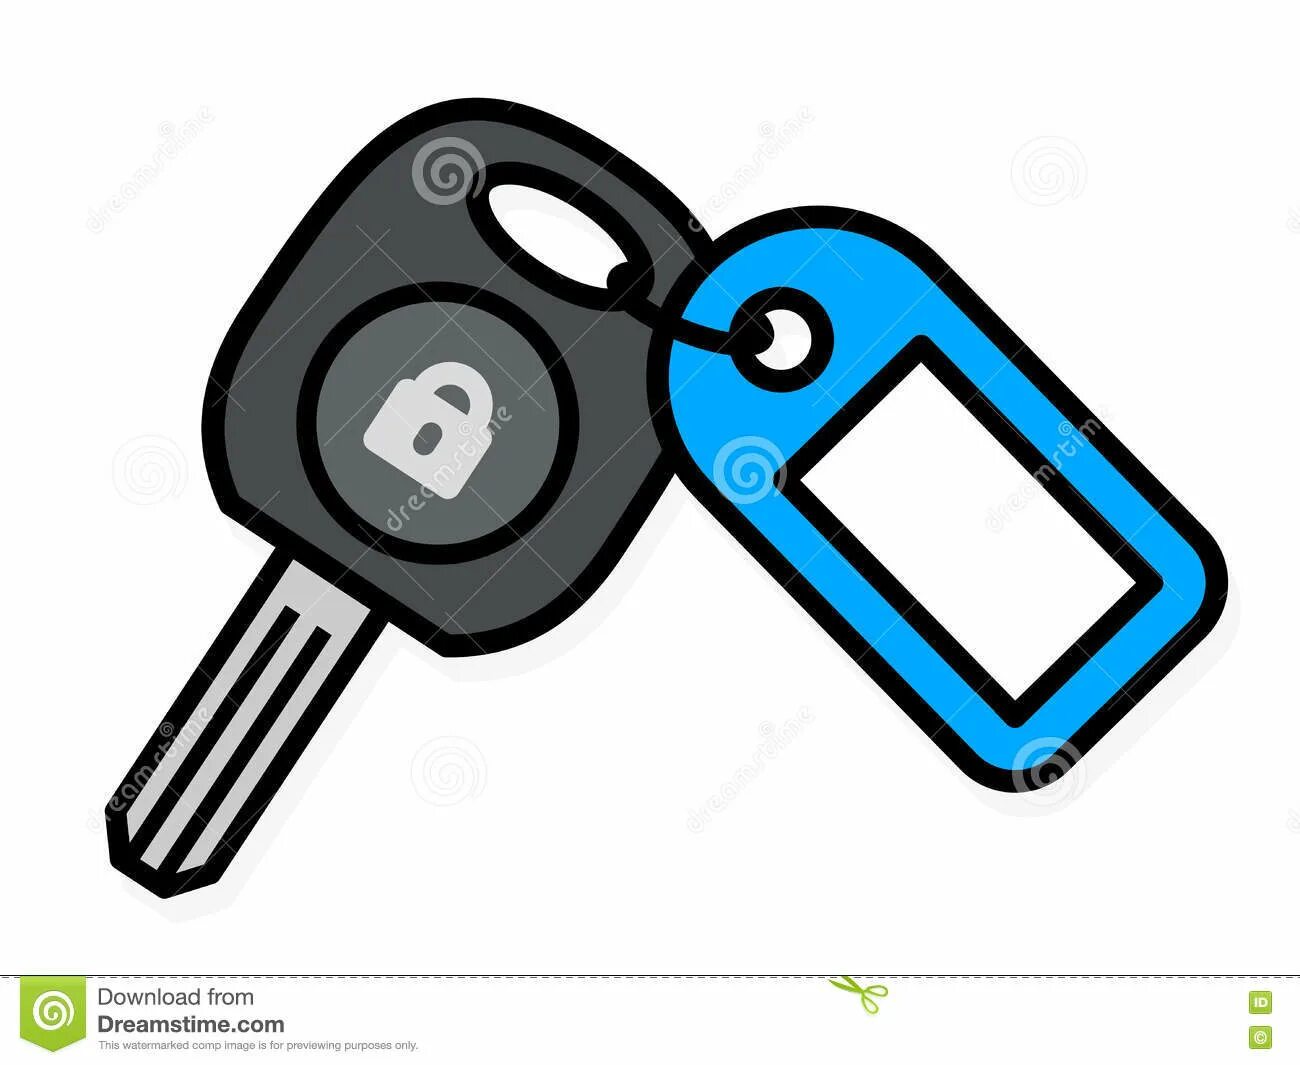 Привлекательная раскраска ключей от машины